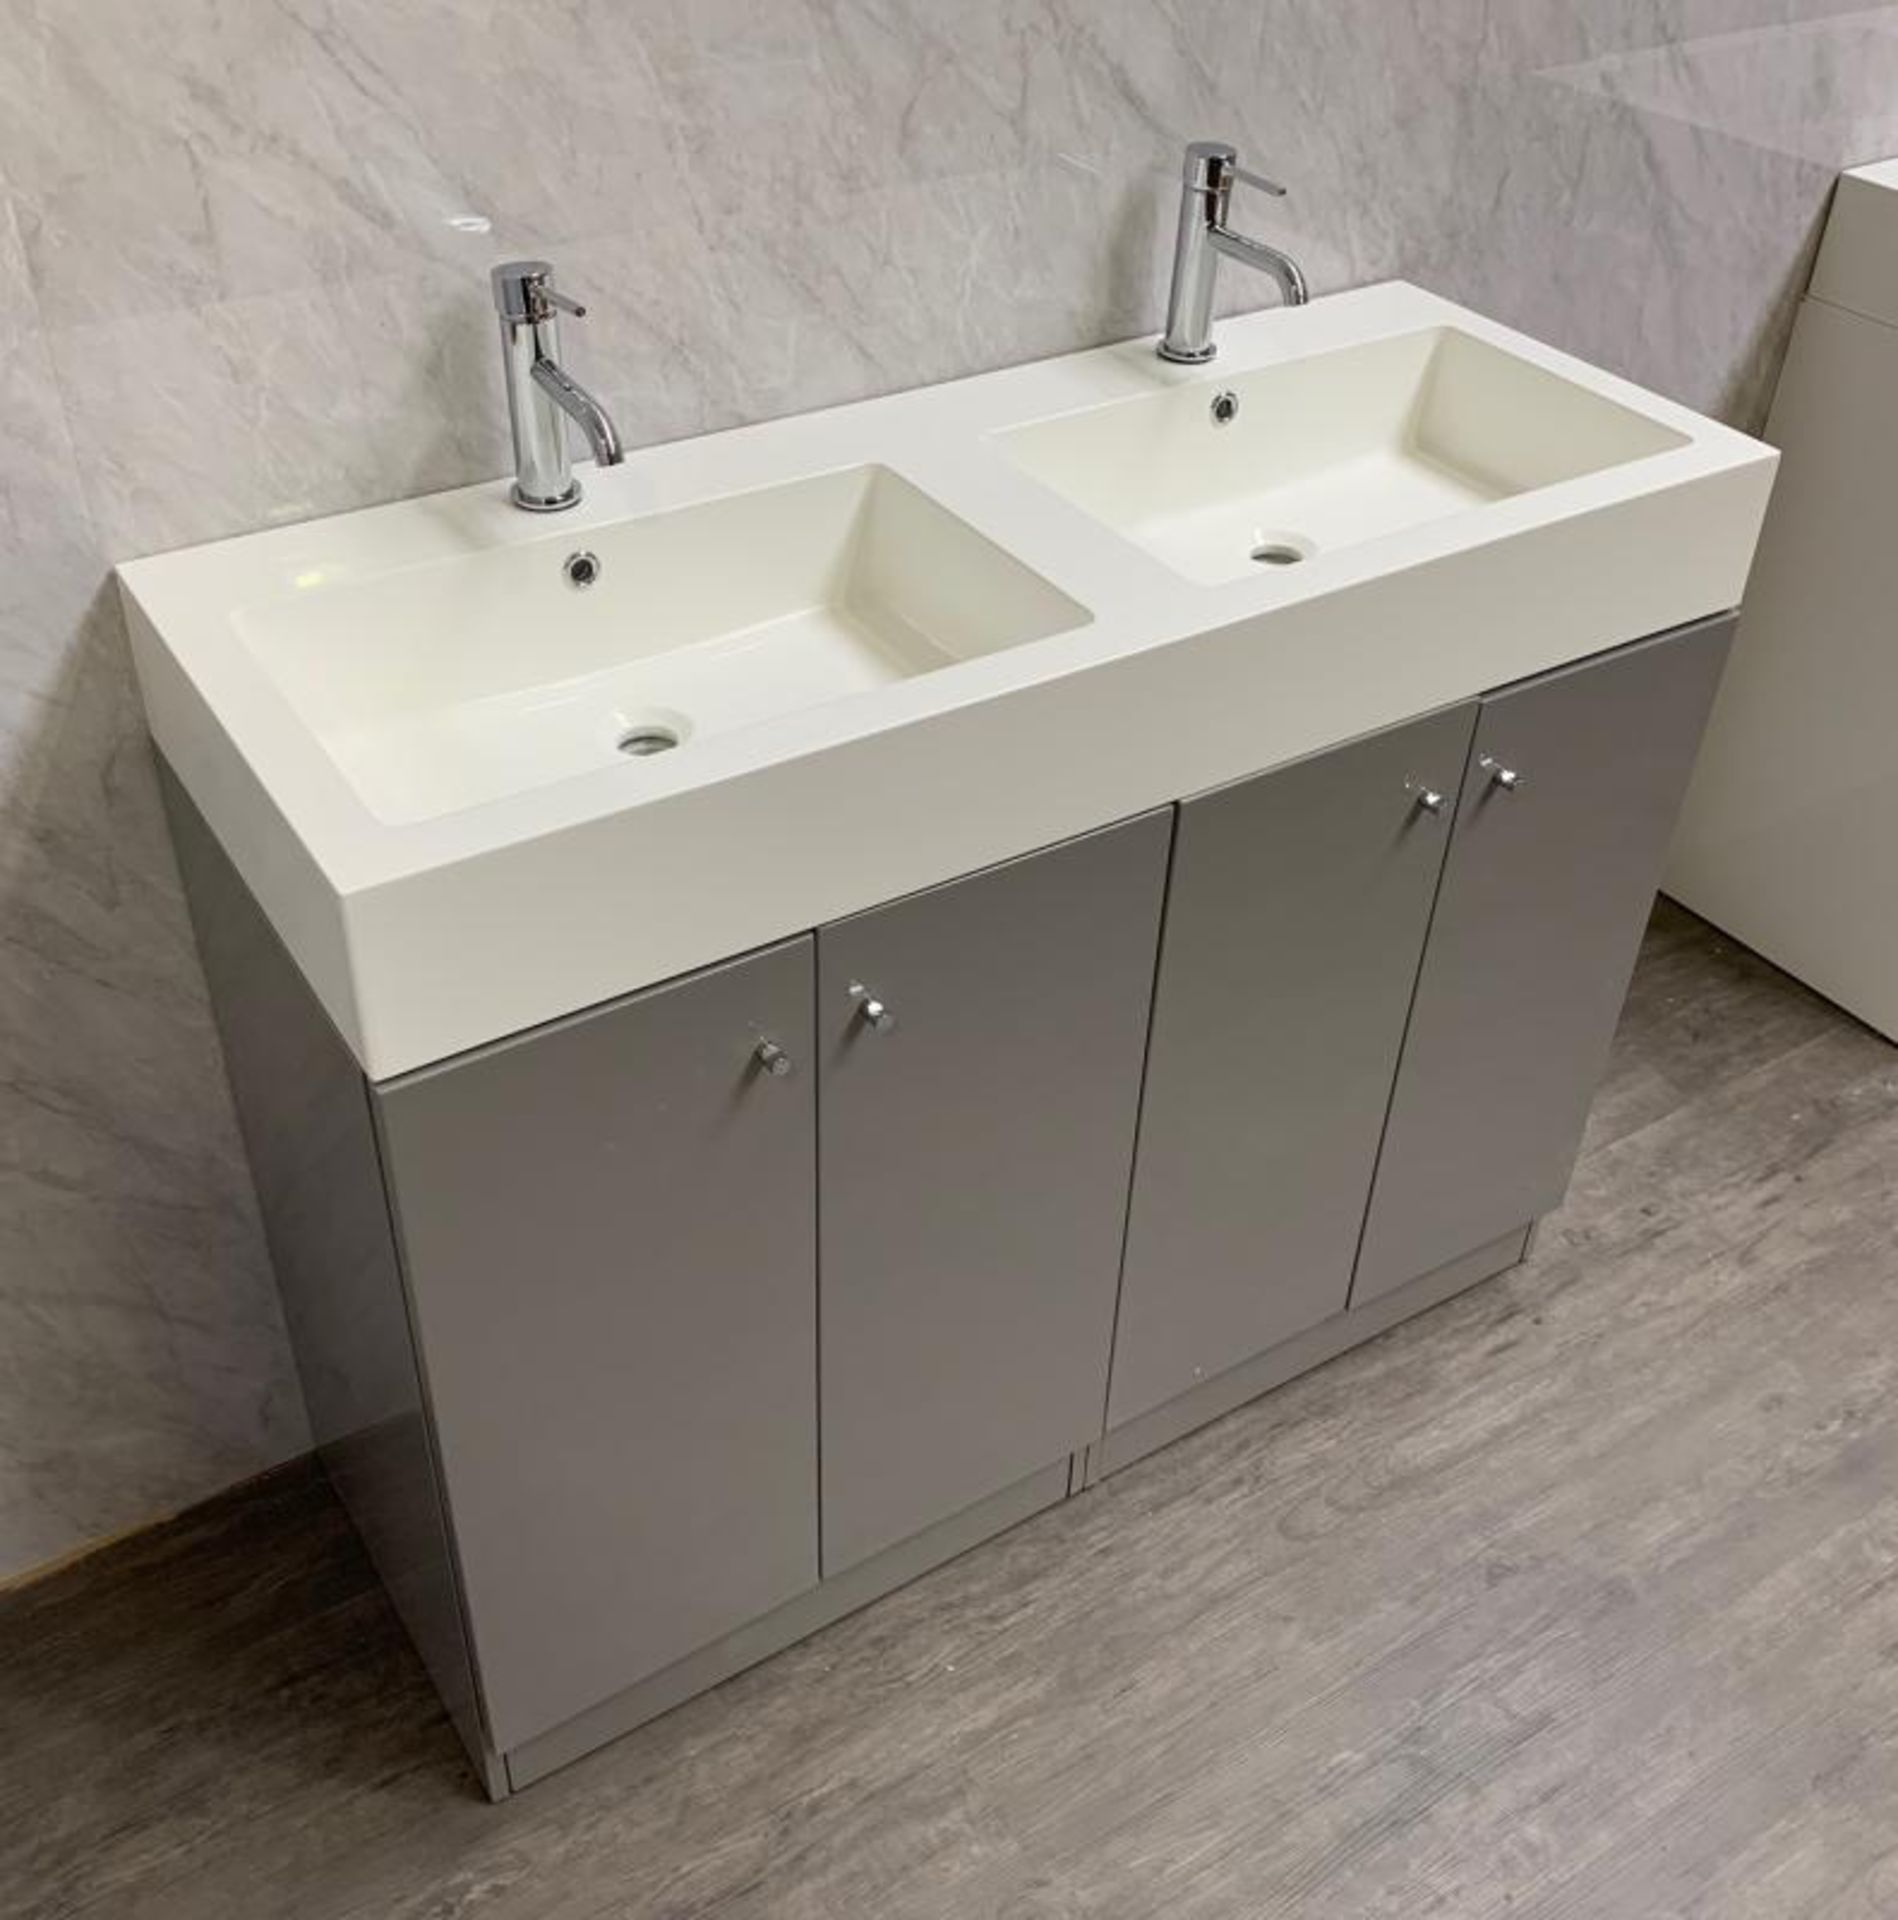 1 x Gloss Grey 1200mm 4-Door Double Basin Freestanding Bathroom Cabinet - New & Boxed Stock - CL406